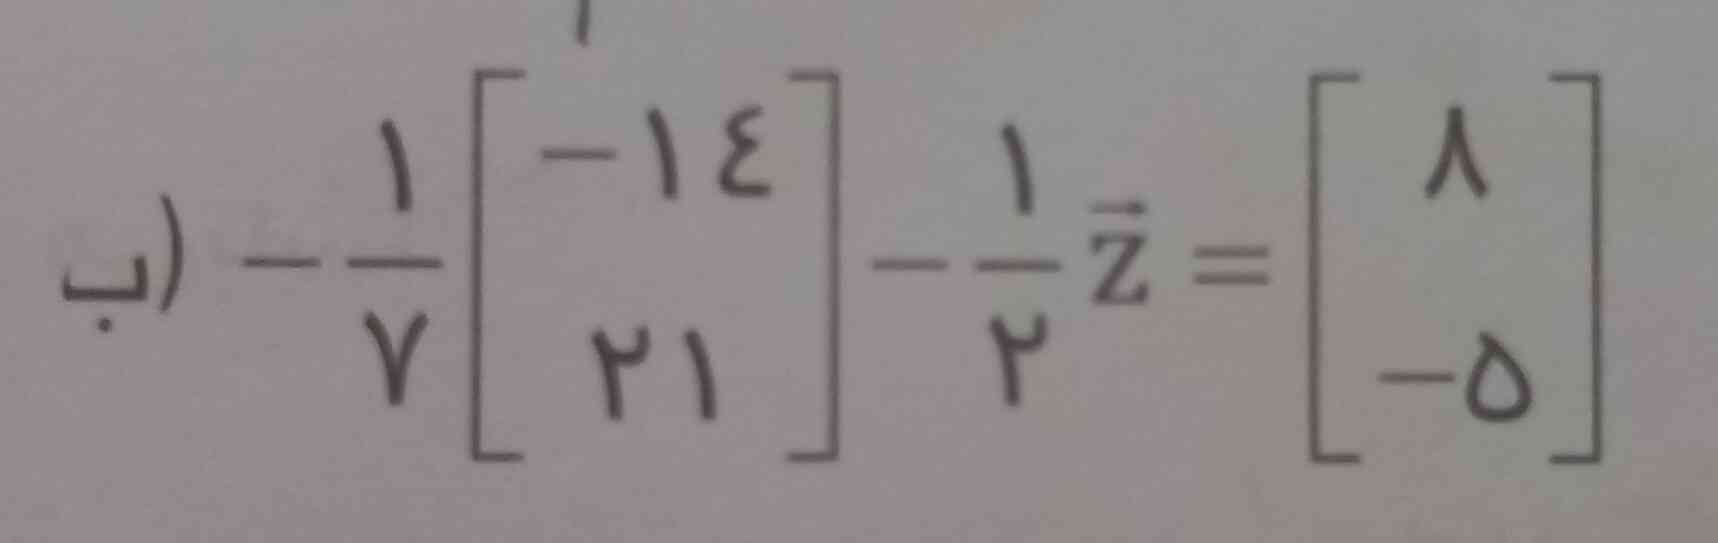 لطفا این معادله رو با توضیح حل کنید
هر جوری حل میکنم نمیفهمم
جواب درست=تاج